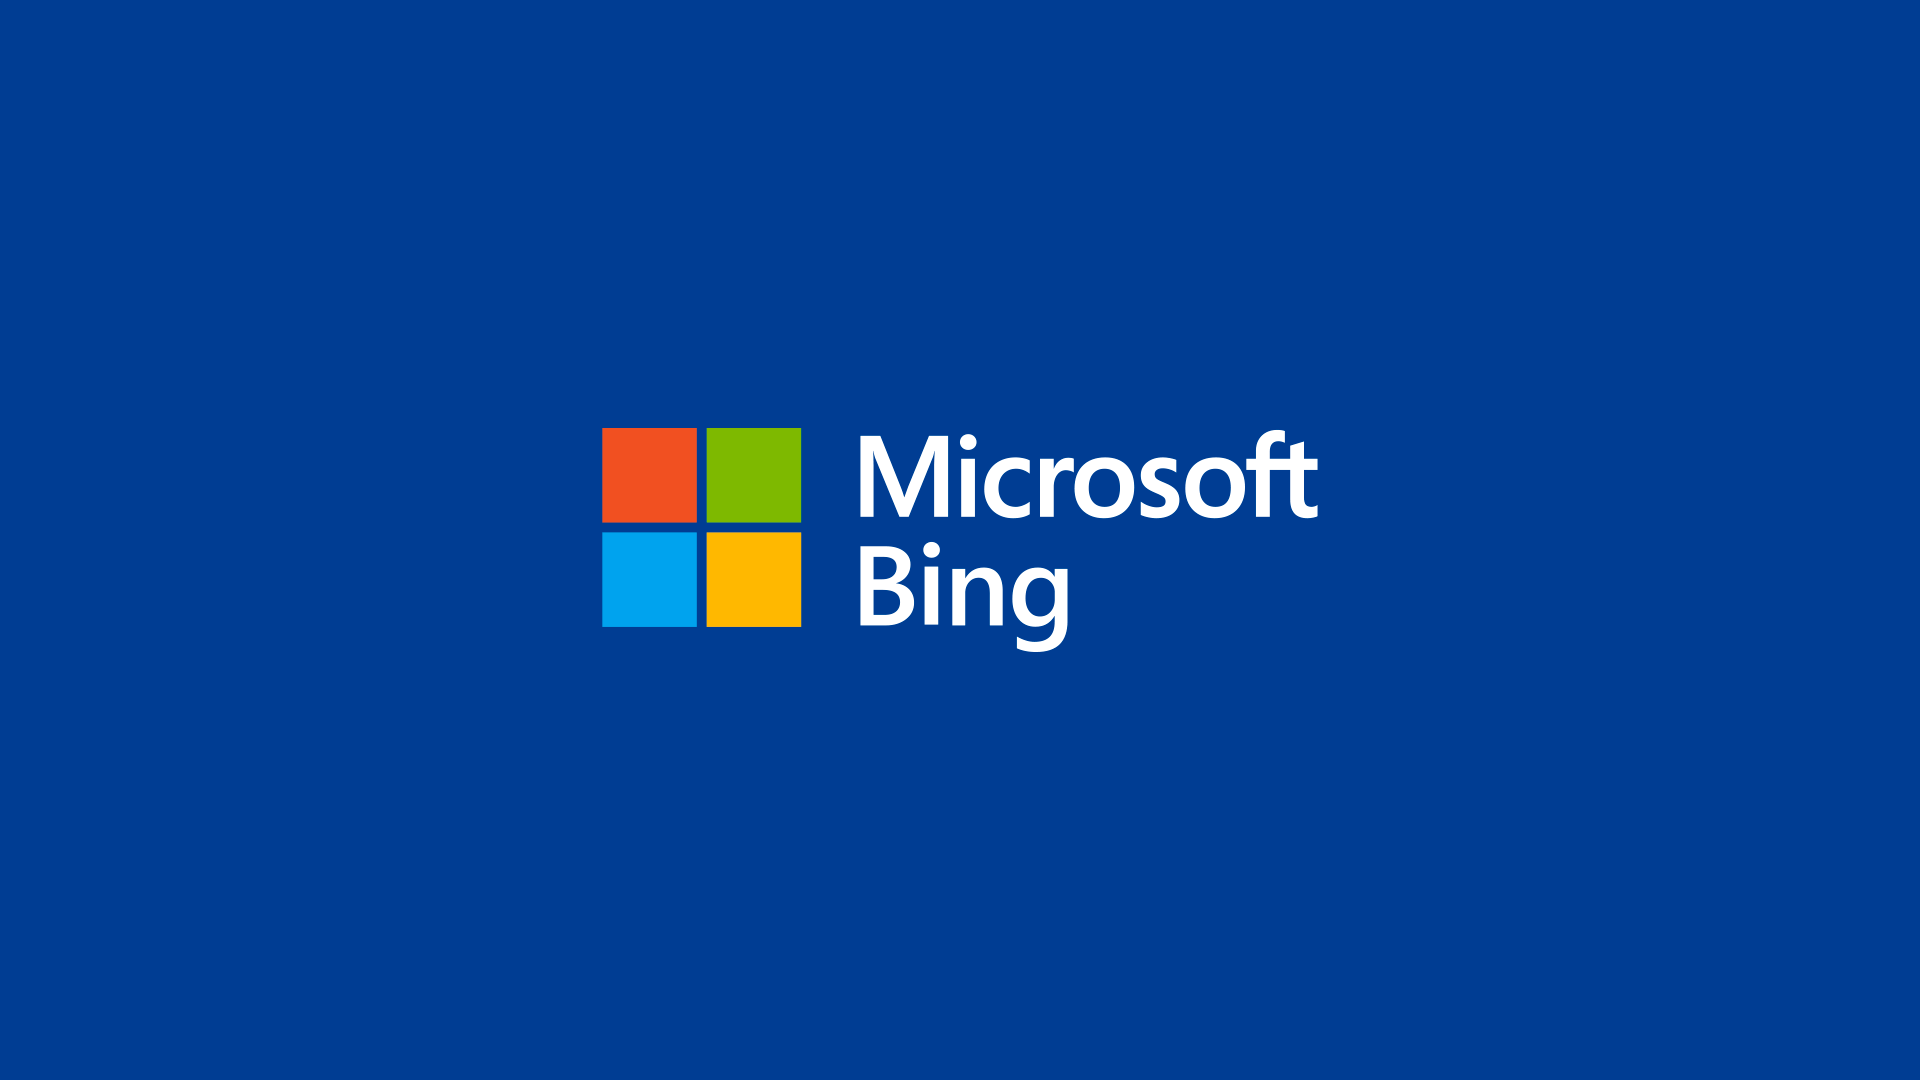 微软四色图标新logo